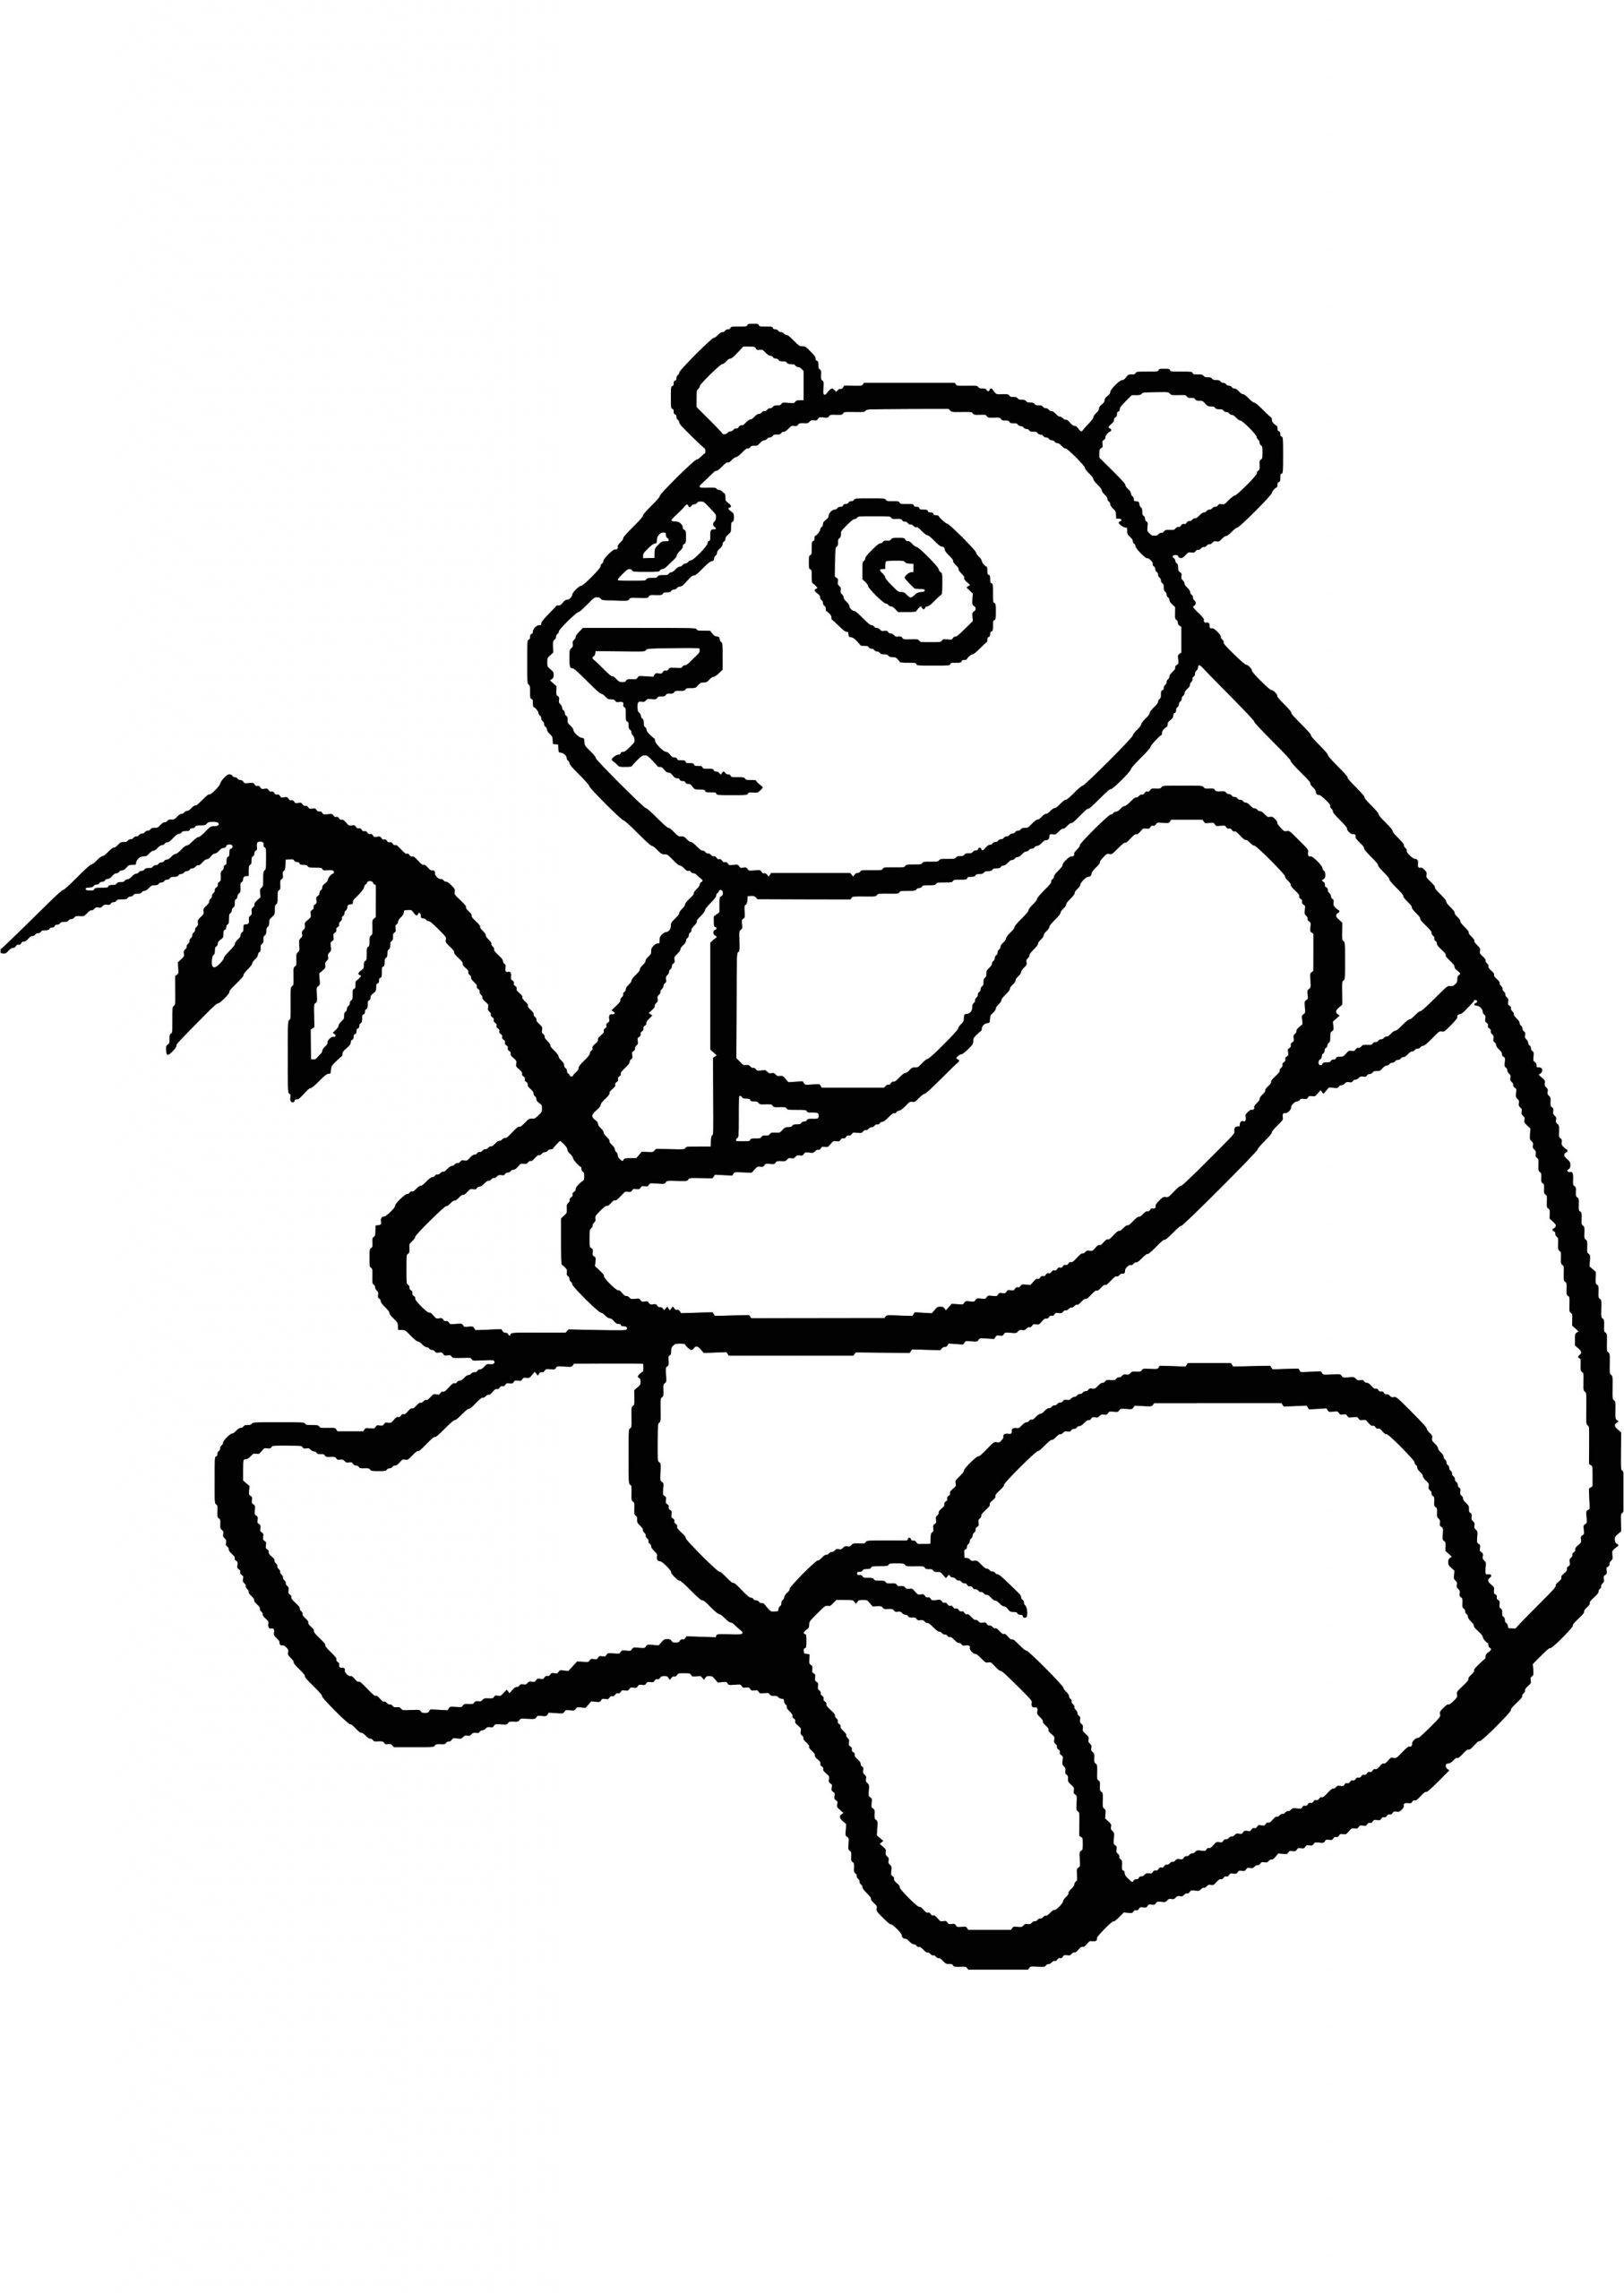 coloriage panda a imprimer gratuit s dessin colorier pandal meublerc 4